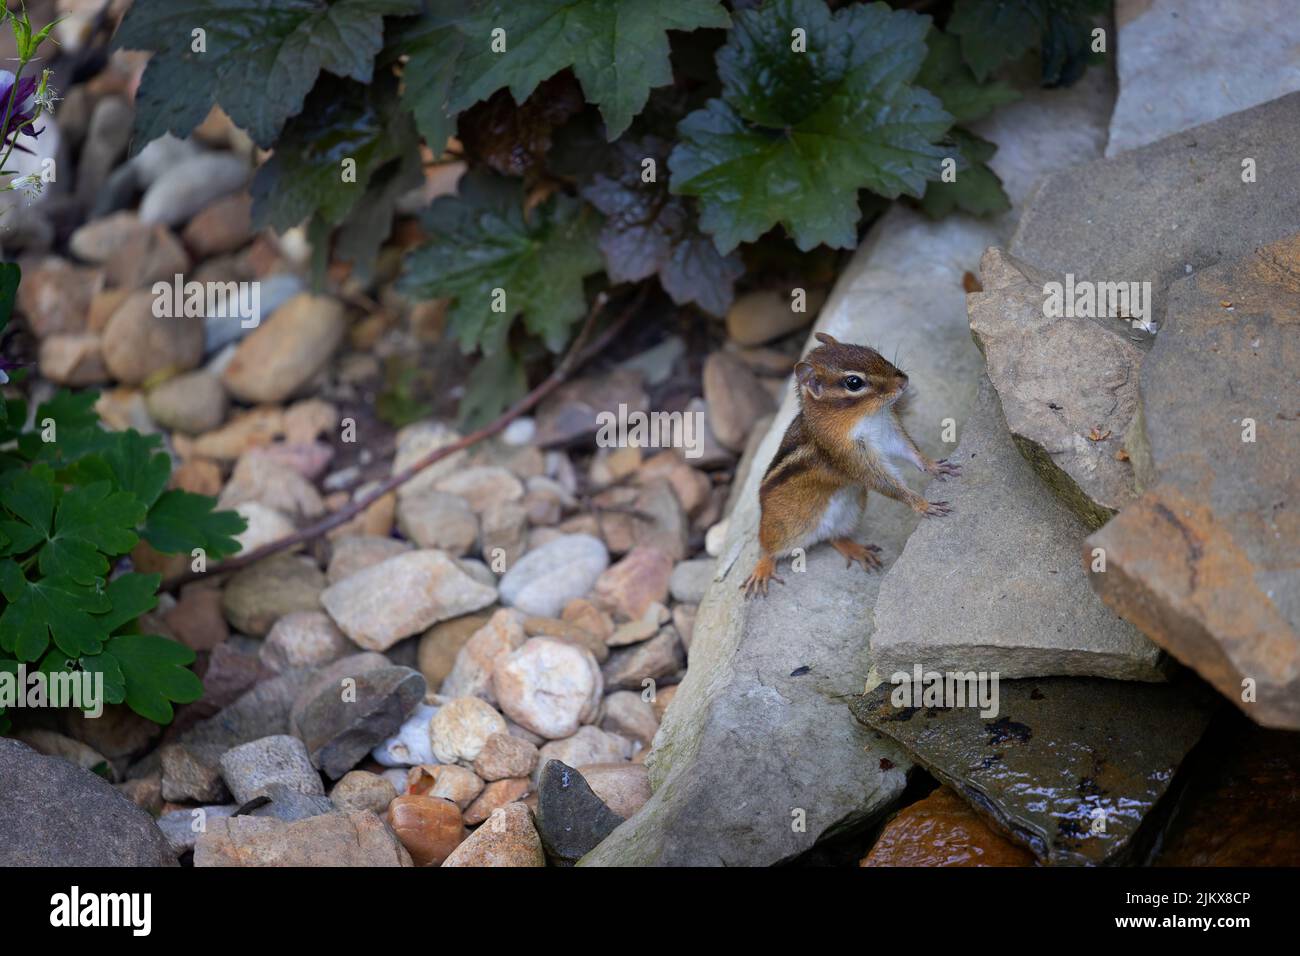 Nahaufnahme eines niedlichen kleinen Chipmunks, der auf einem Felsen steht Stockfoto